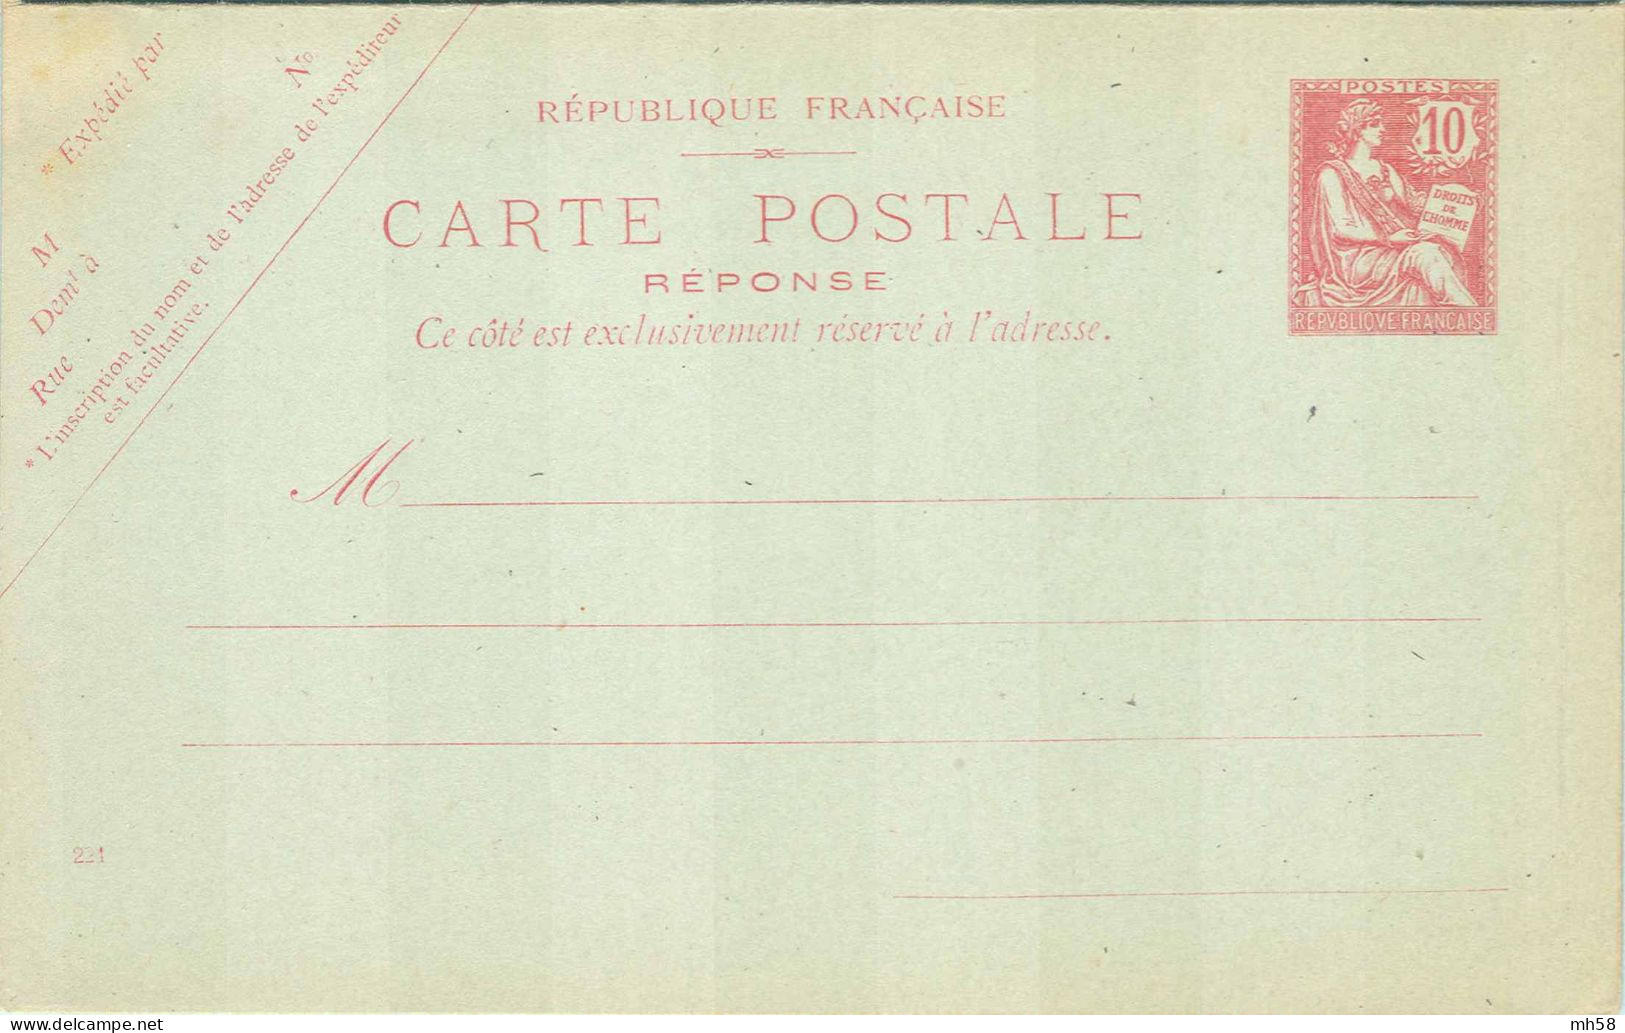 Entier FRANCE - Carte Réponse Payée Date 221 Neuf - 10c Mouchon Retouché Rose - Standard Postcards & Stamped On Demand (before 1995)